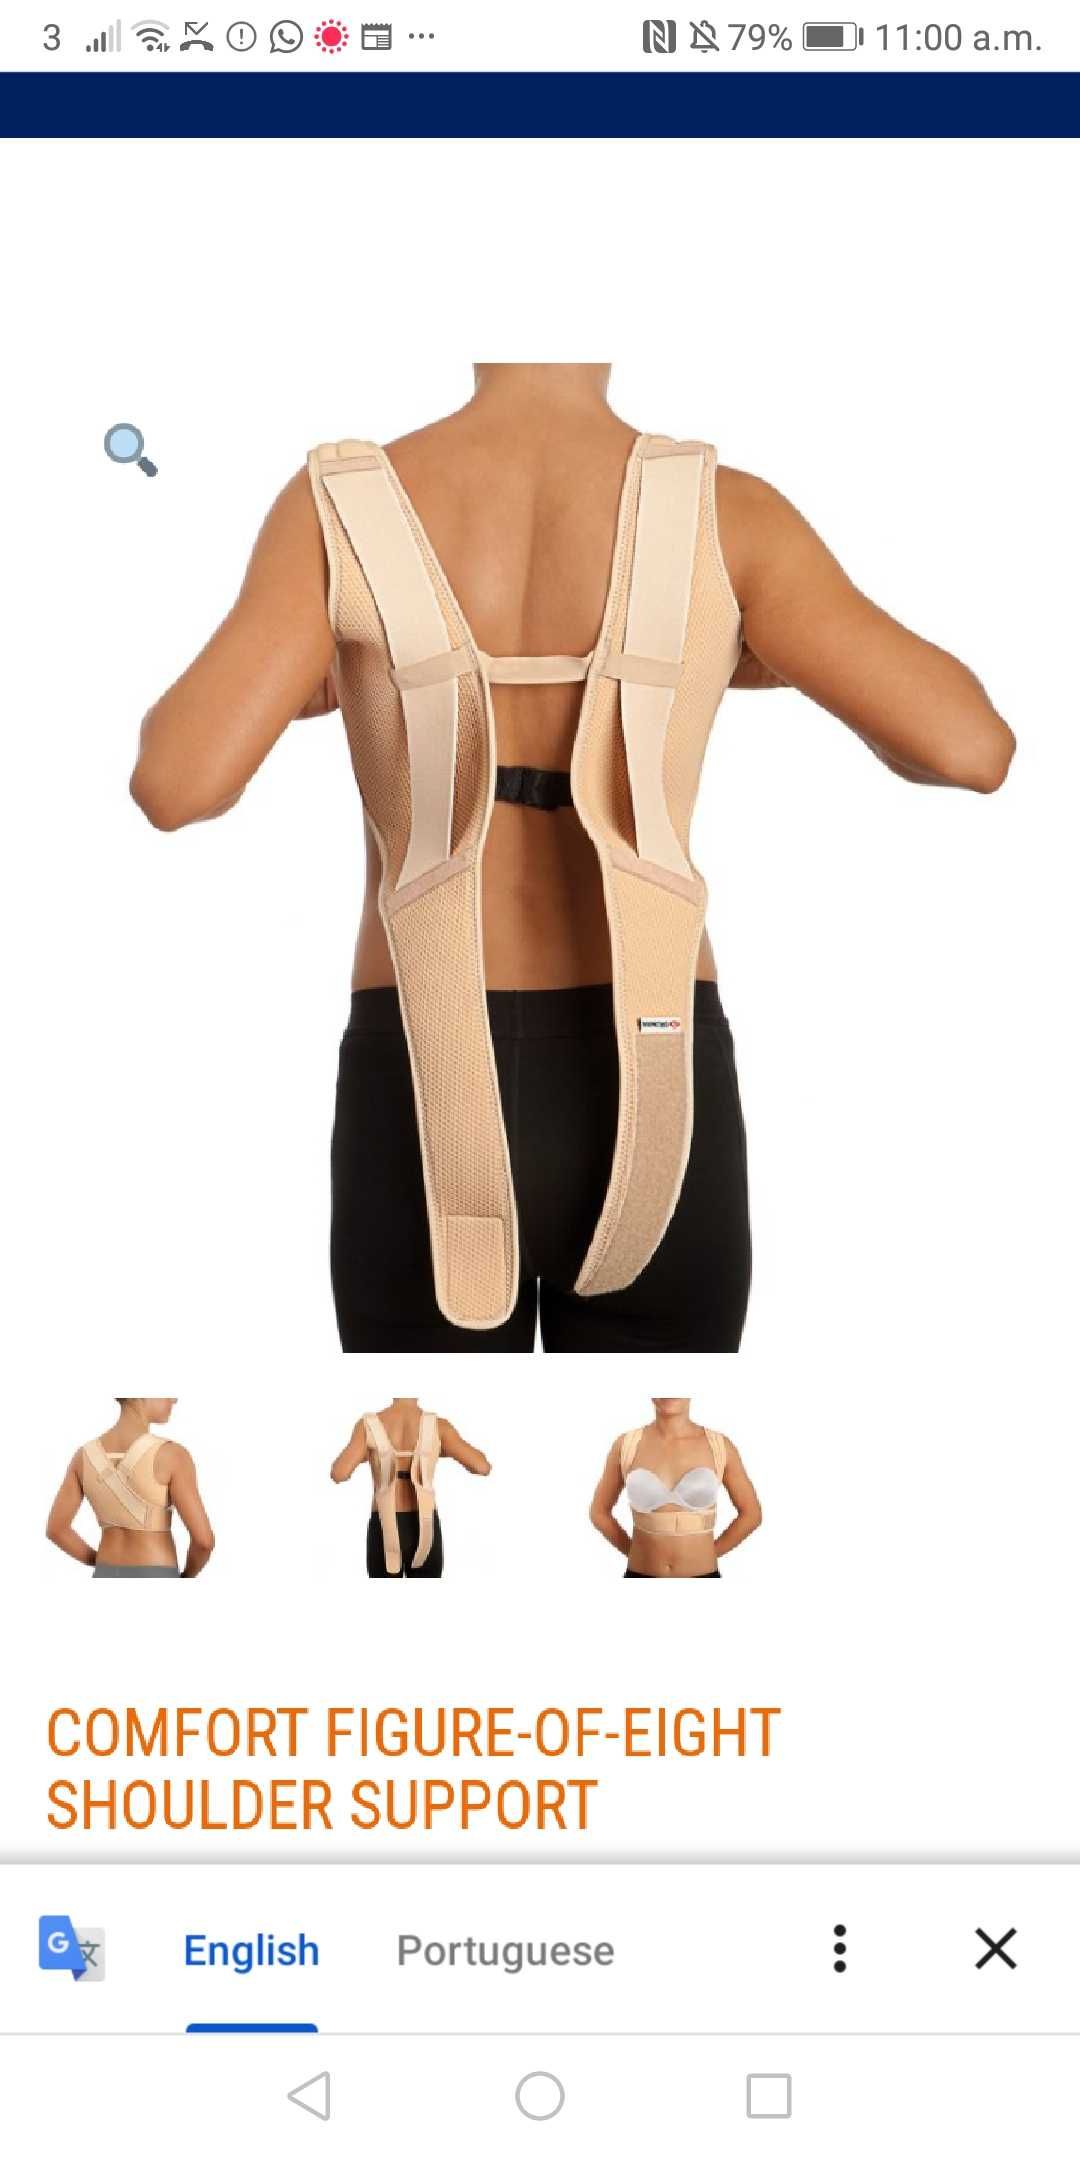 suporte confortável de ombro e clavícula em formato de oito